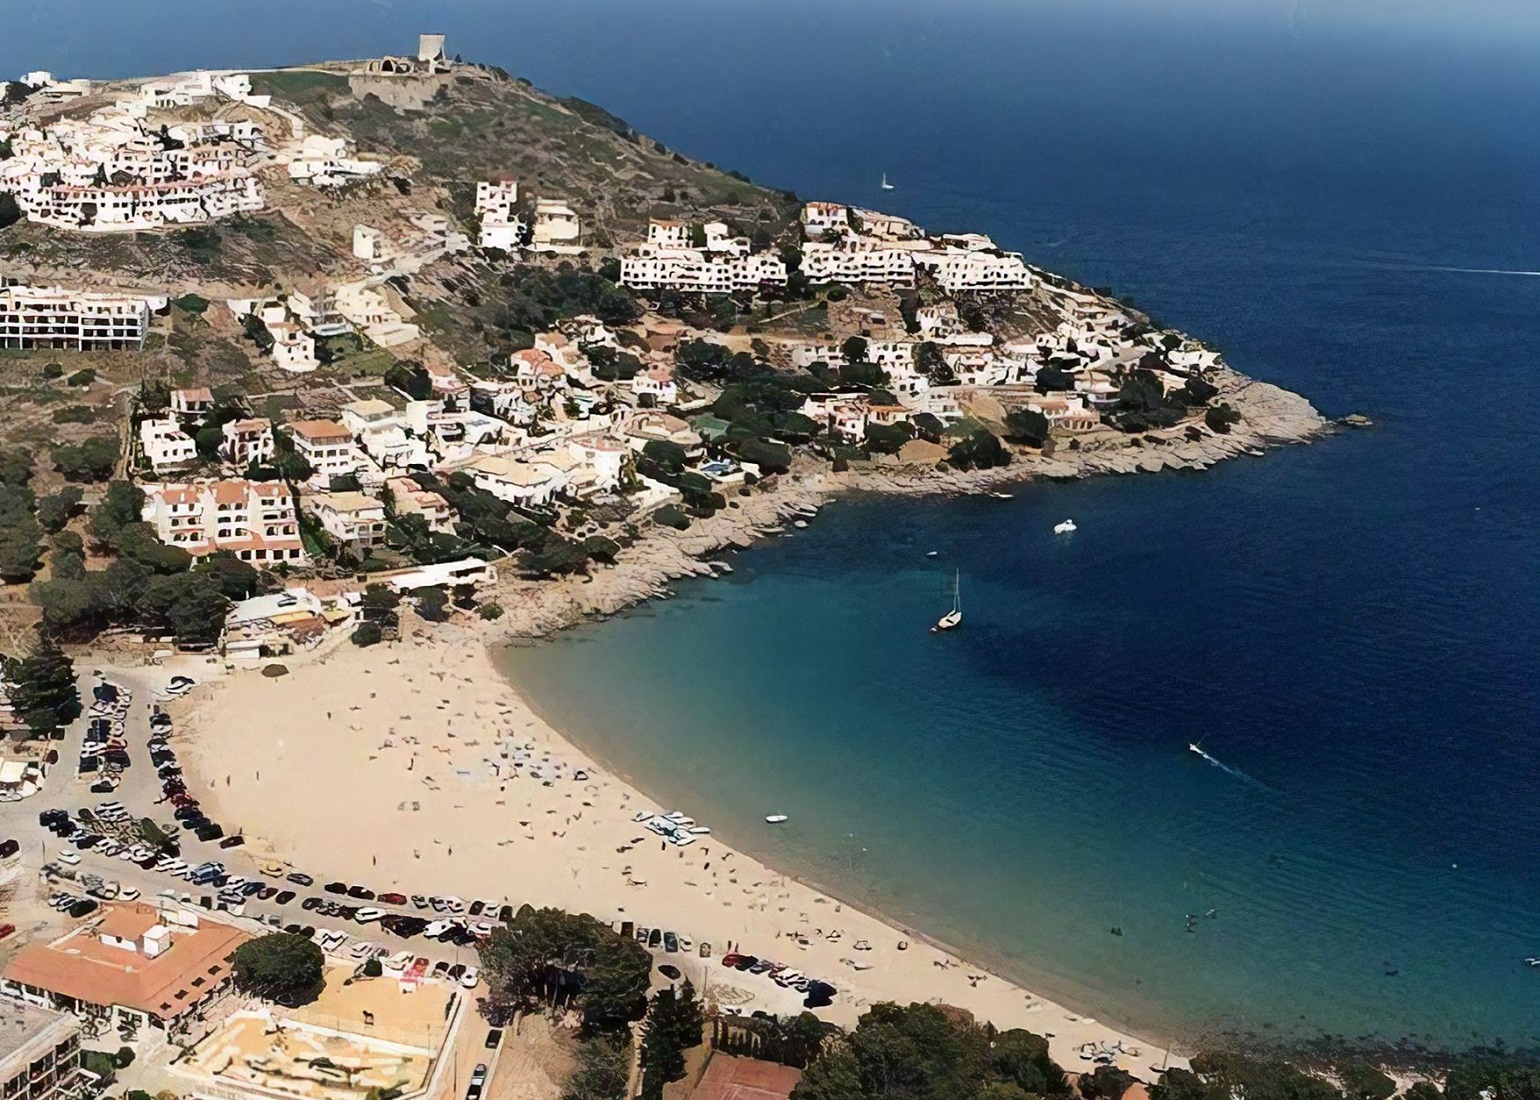 Foto de la playa de Torroella de Montgrí donde se puede ver la población al fondo de la playa sobre una pequeña colina sobre el mar